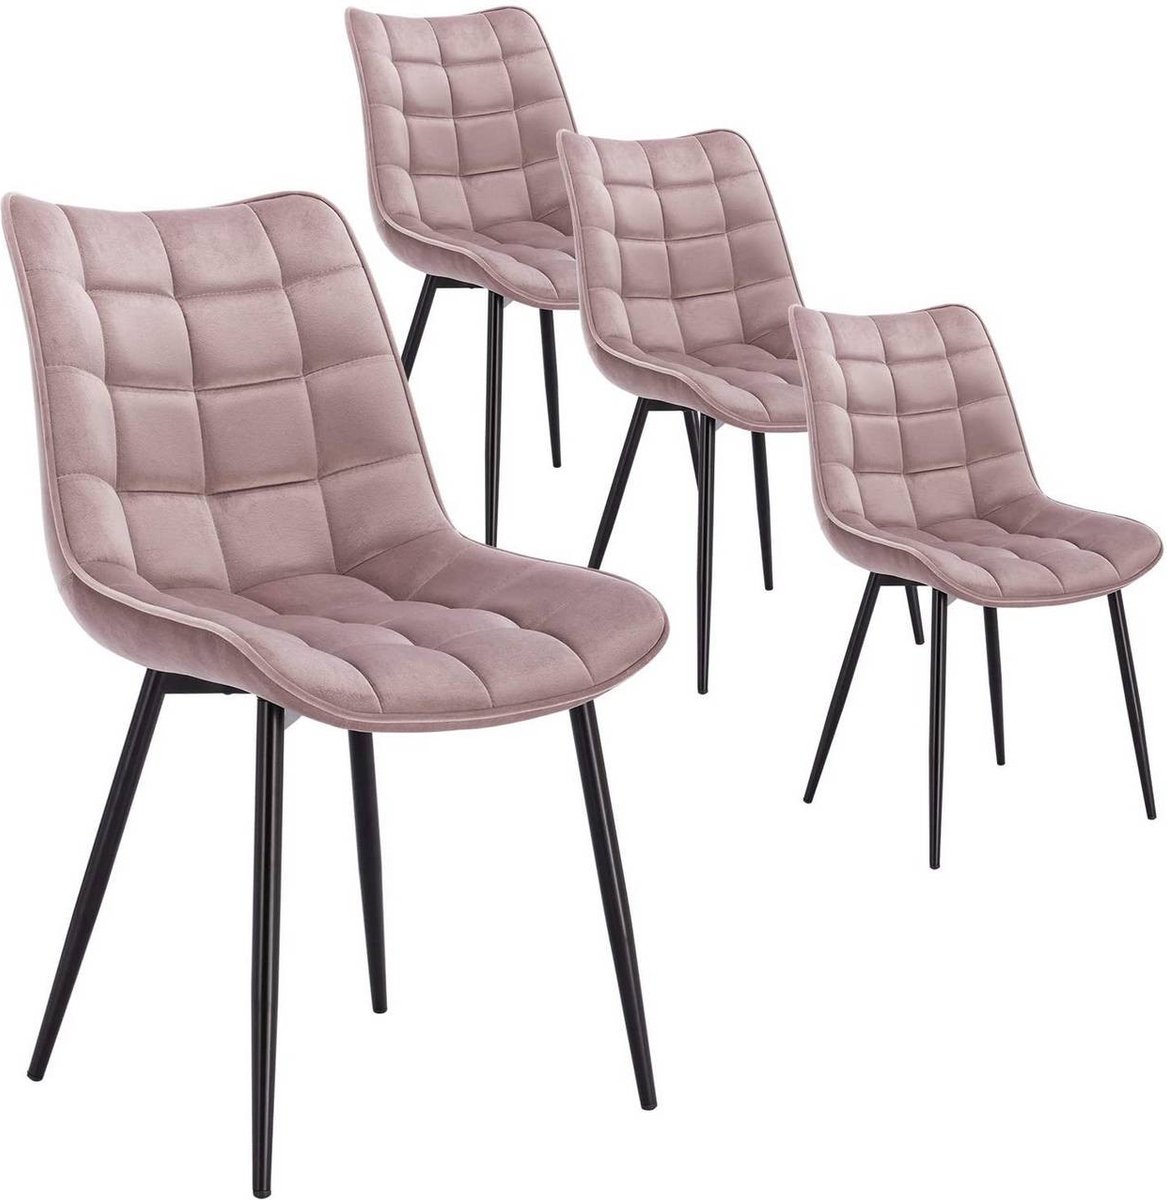 Chaise design en velours matelassé rose poudré et pieds métal noir